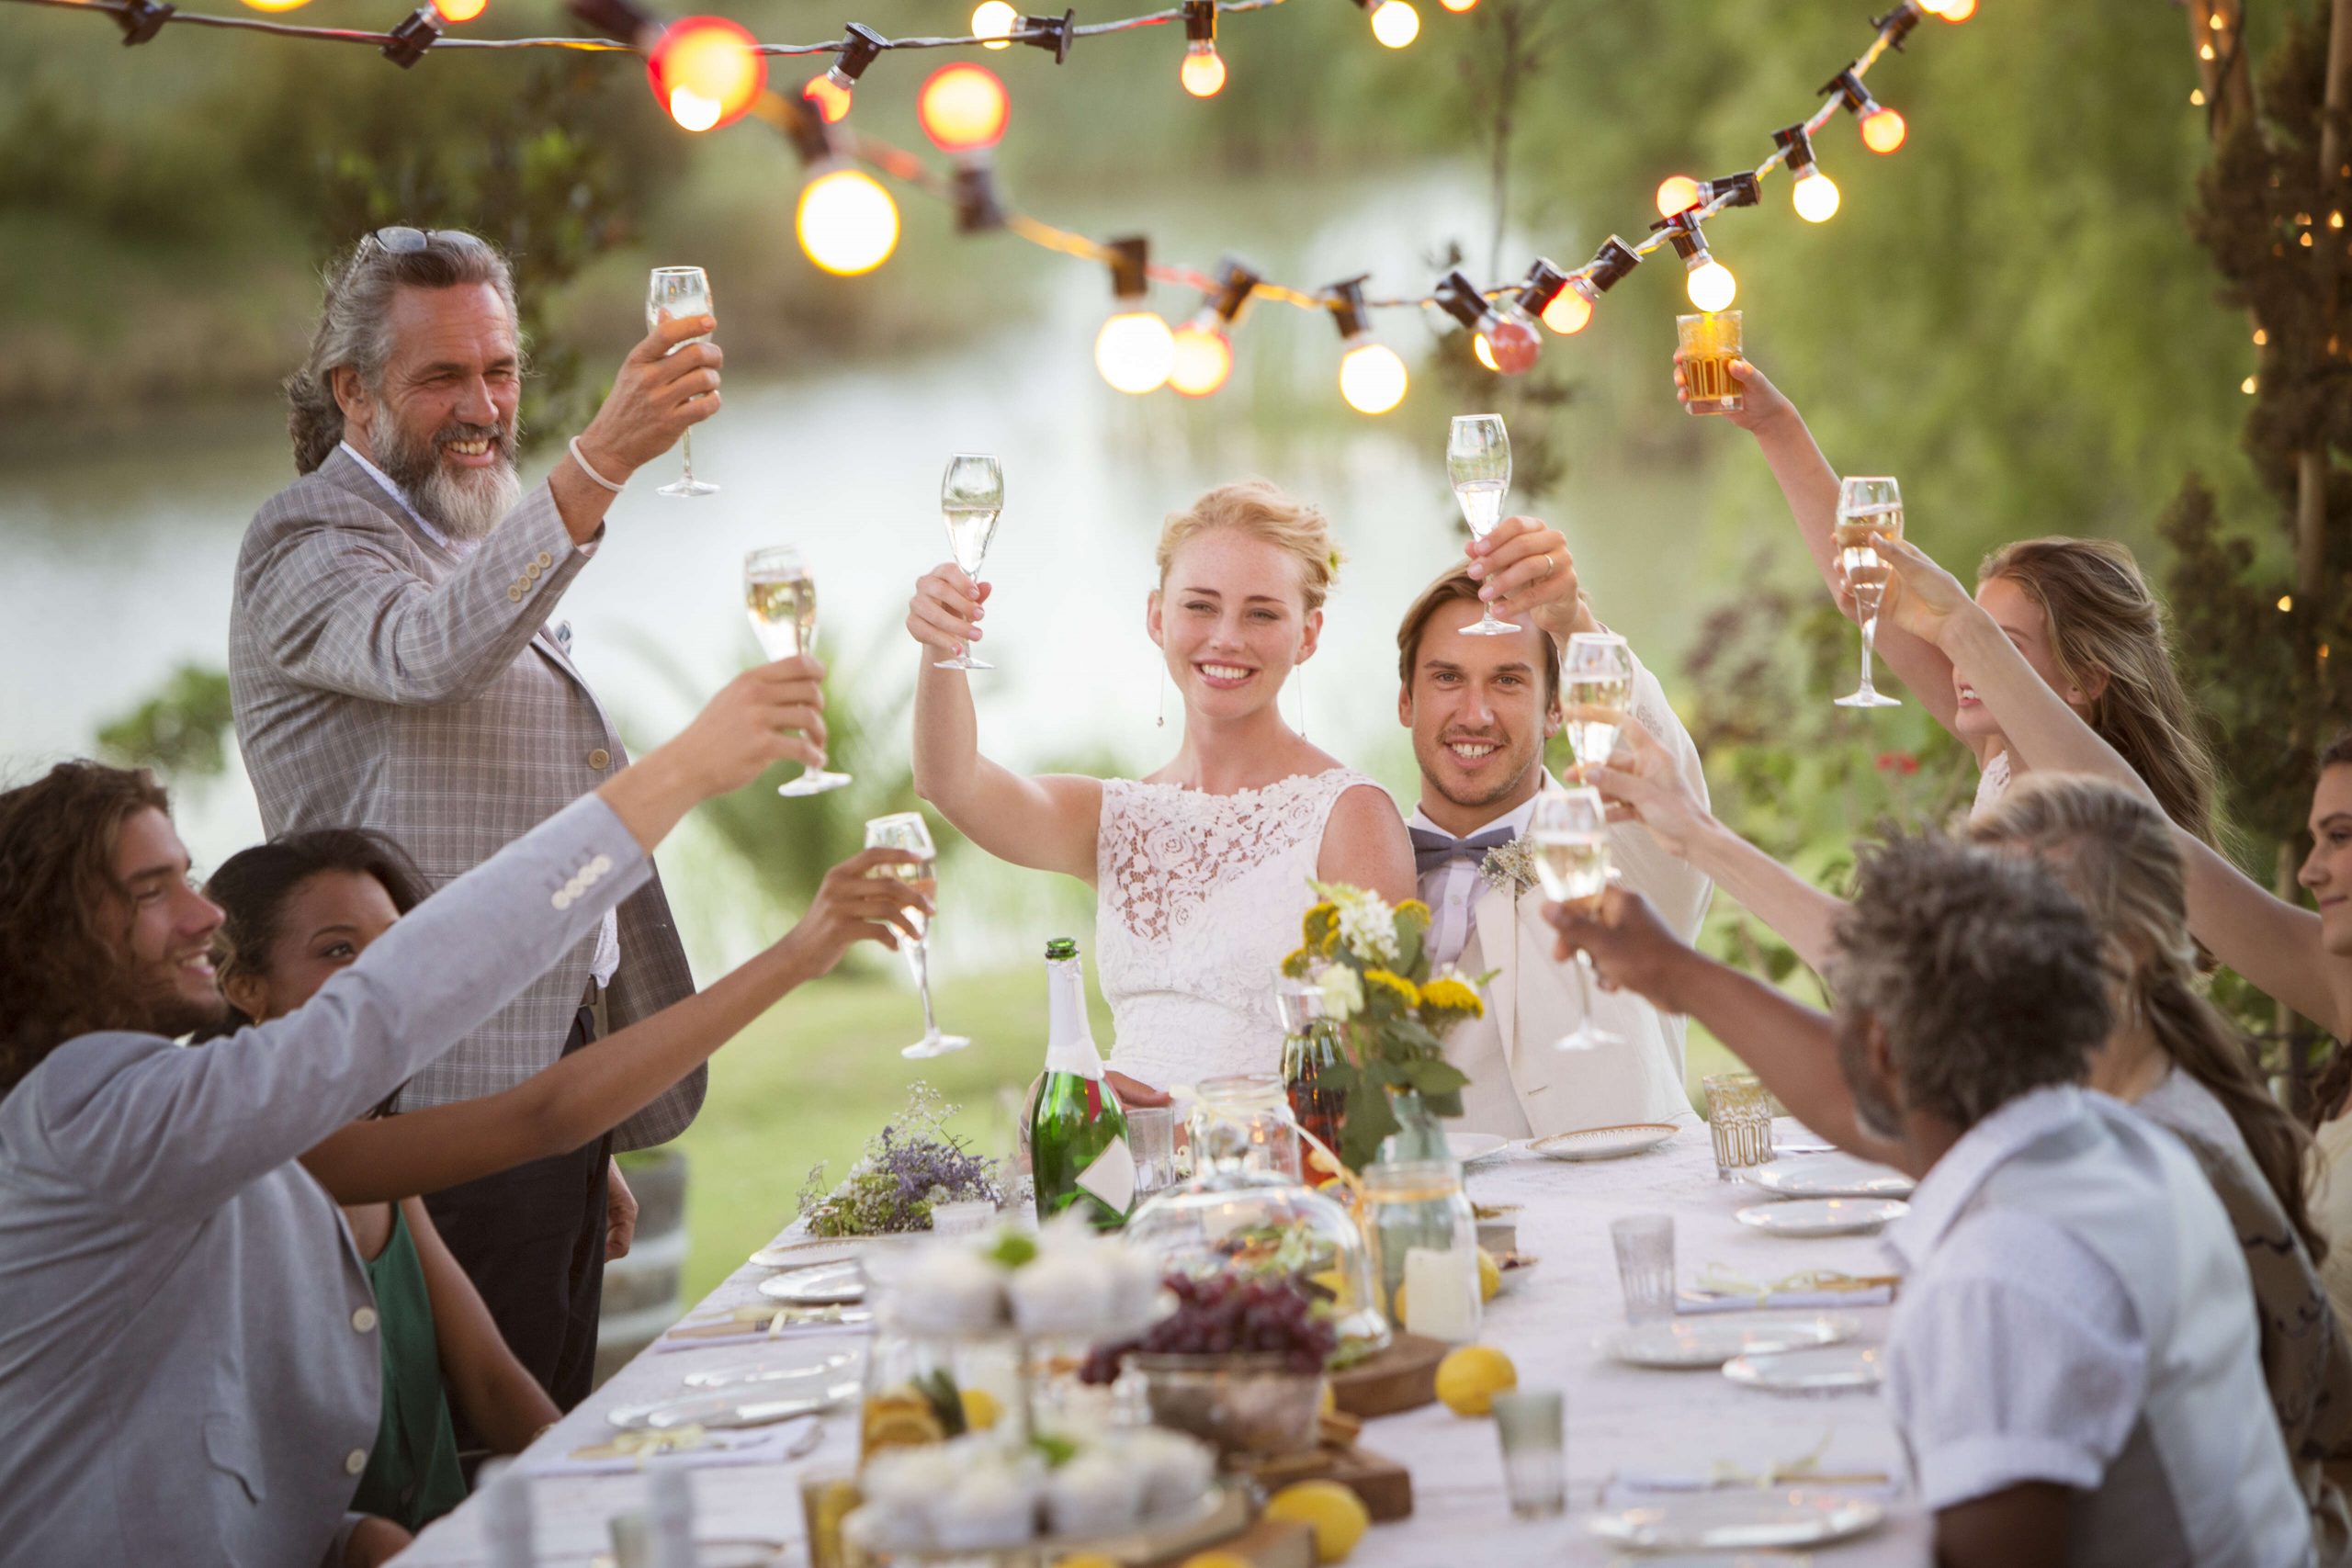 Hochzeitsfeier mit glücklichen Gästen im Freien und Sektempfang von Barmännern im Quadrat